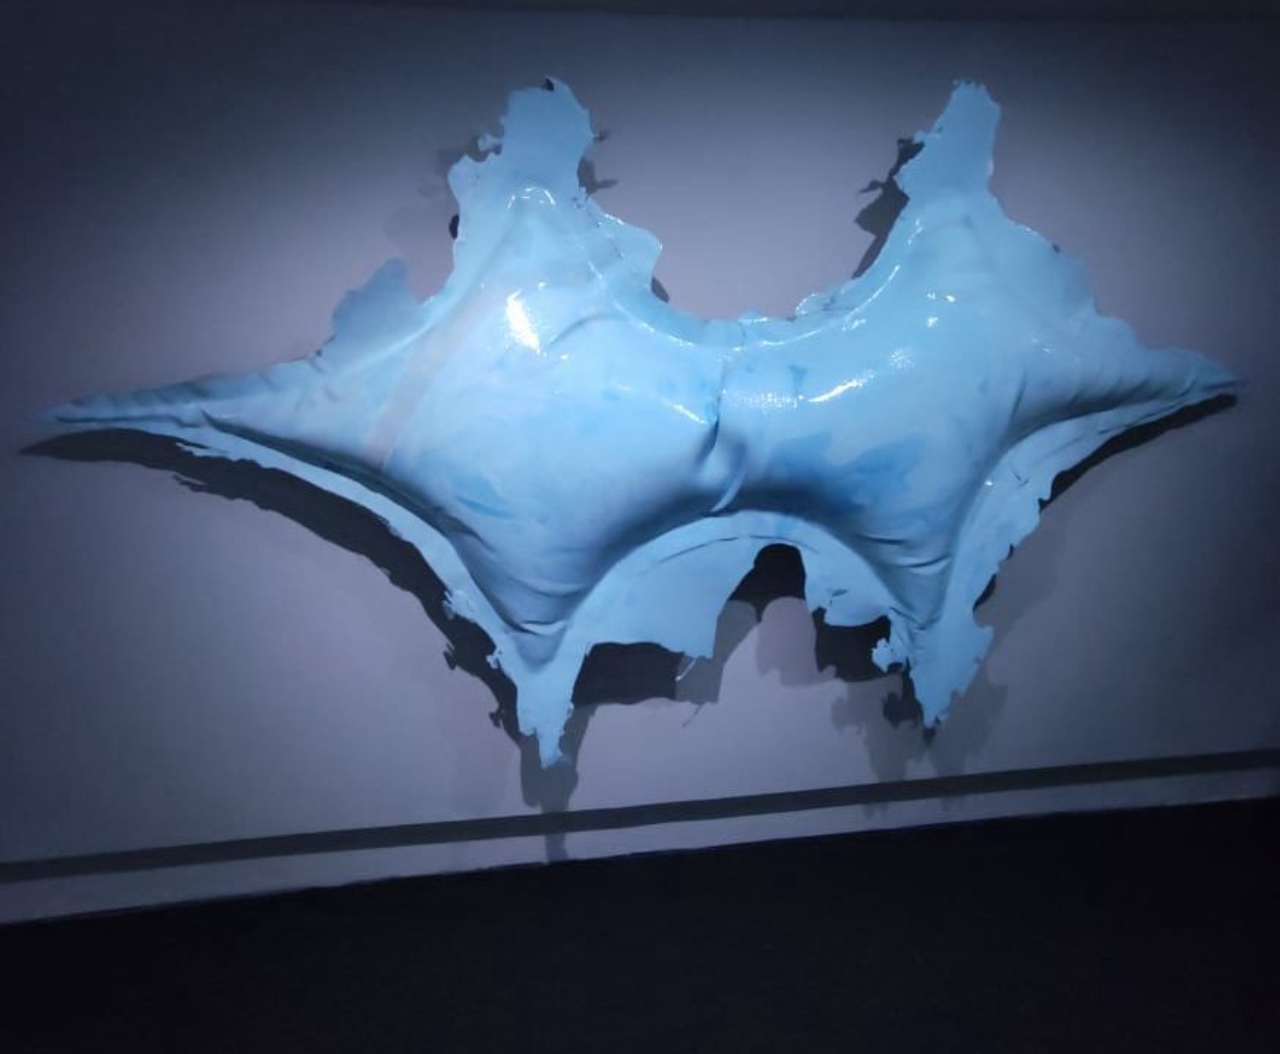 Obra inflável feita de resina vegetal com tecido integra a exposição de André Mendes no MON.